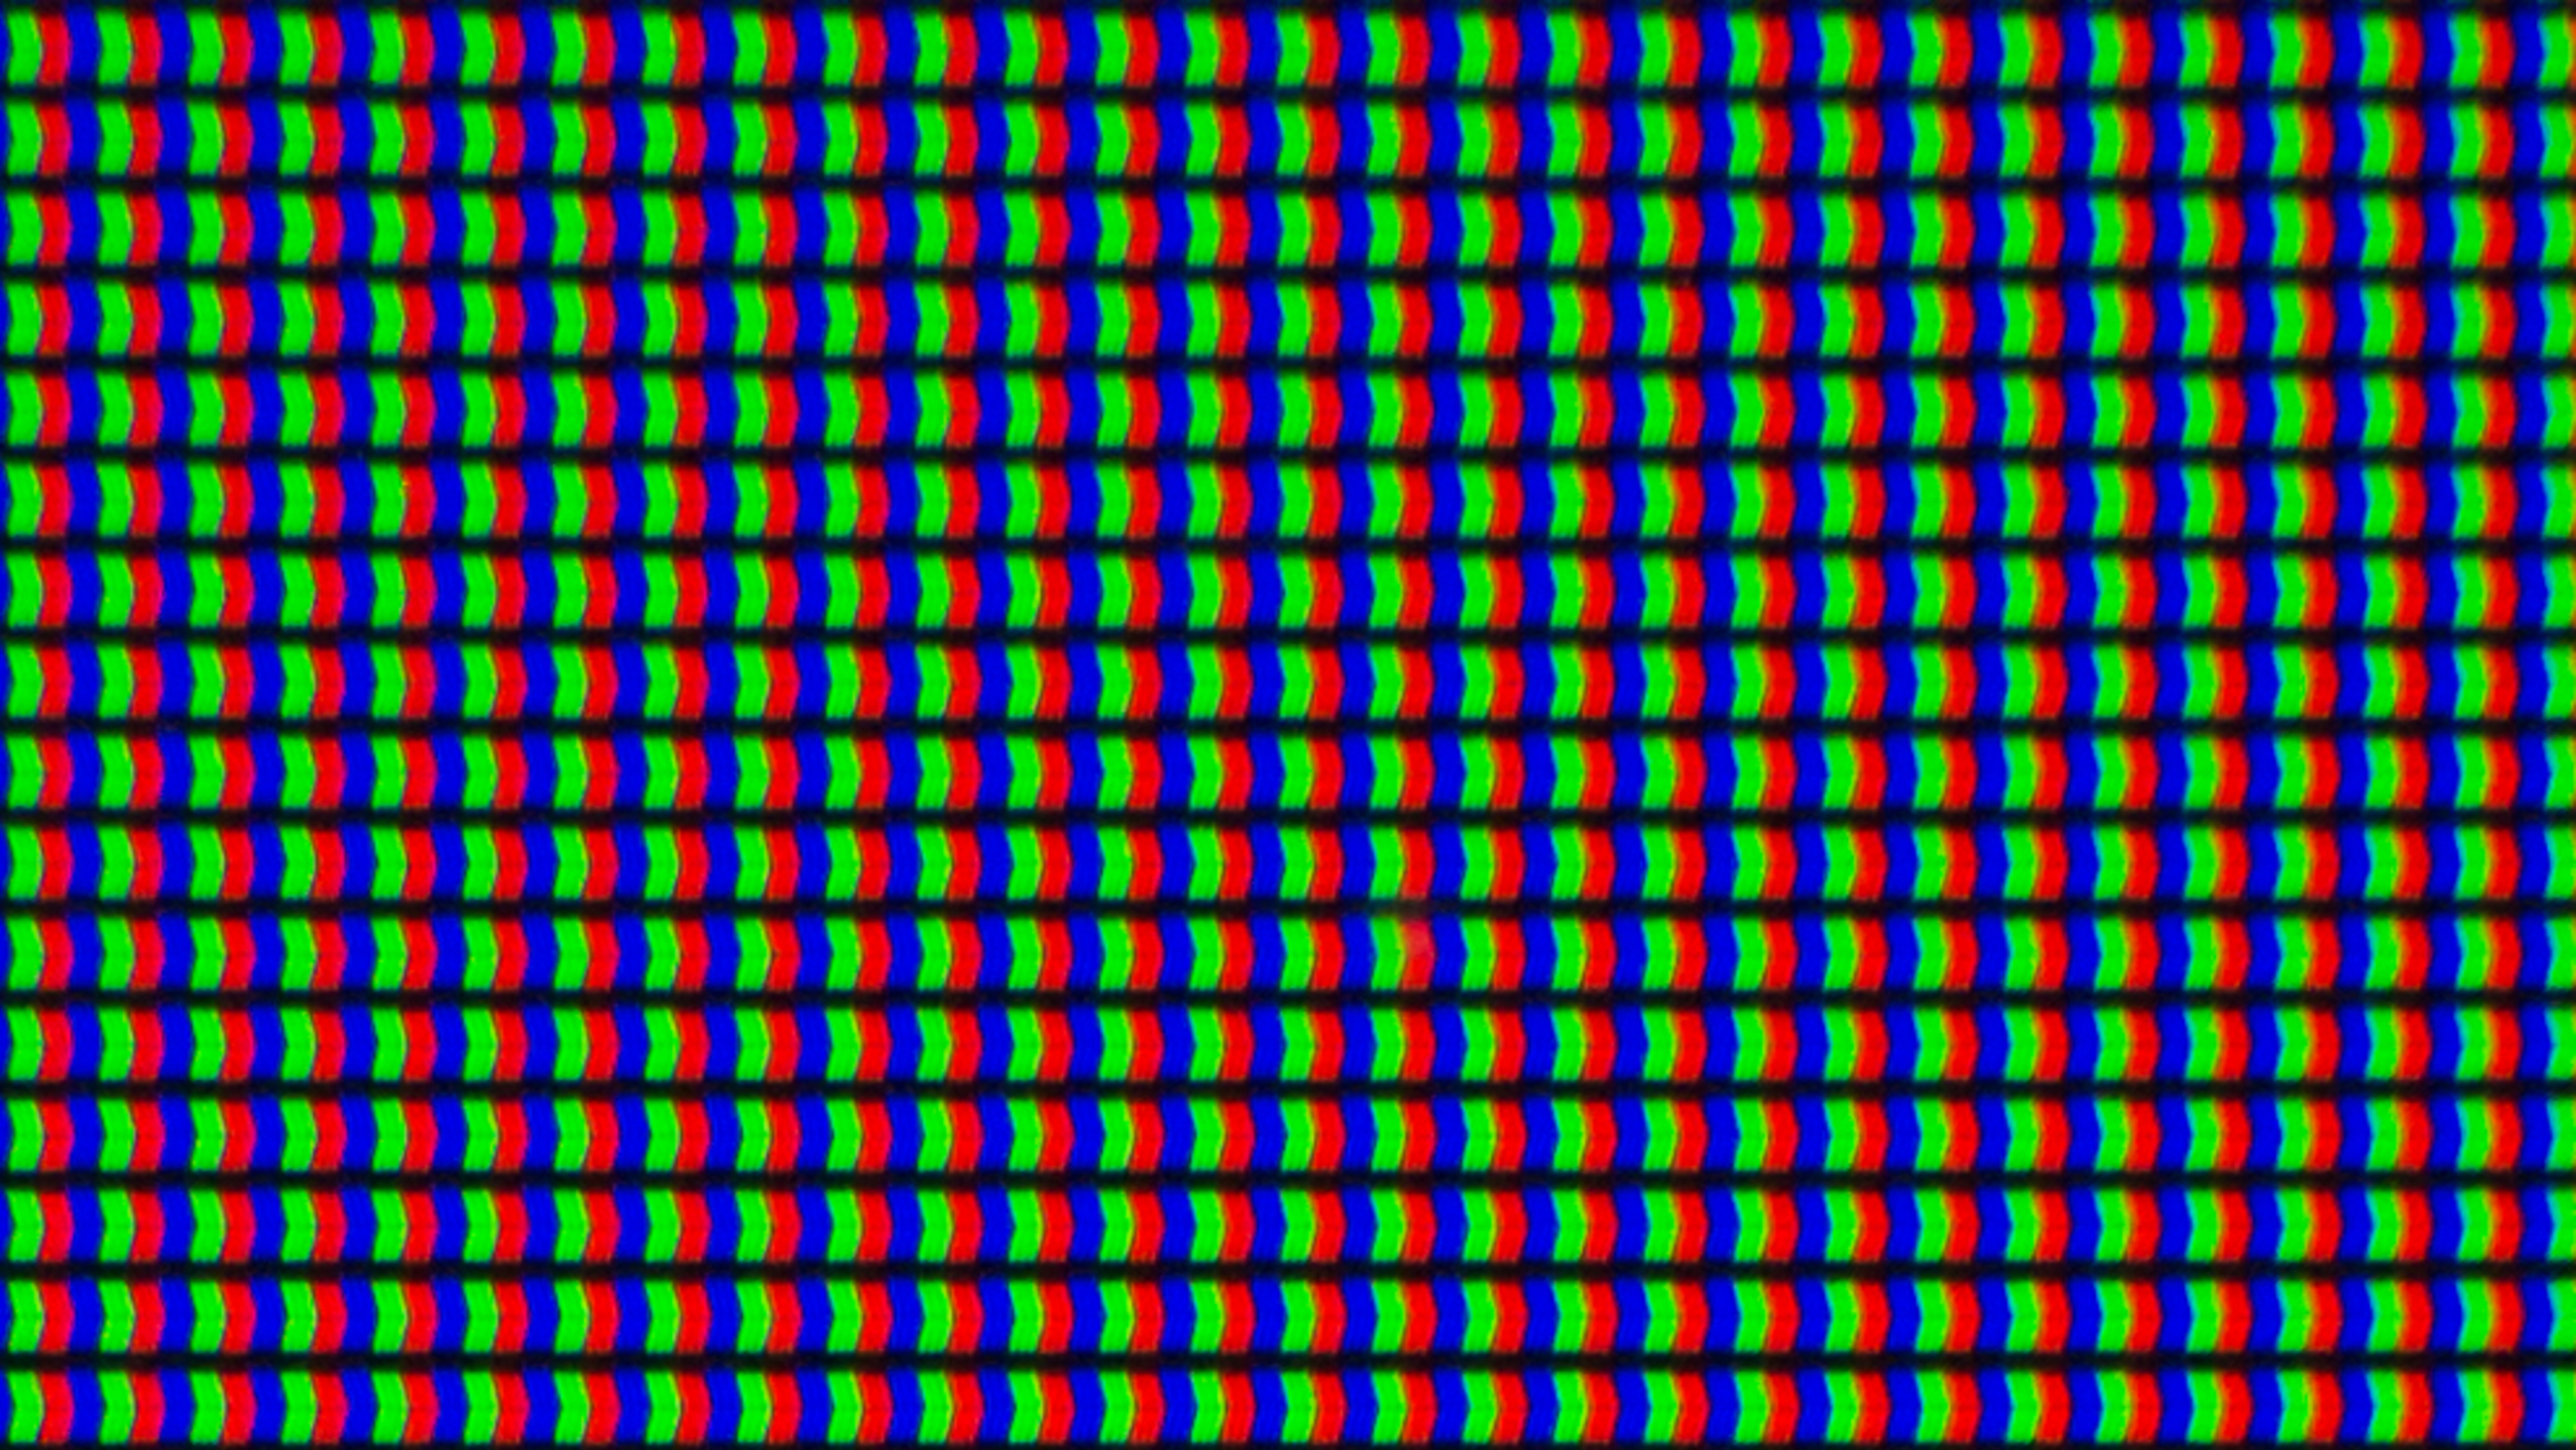 x850d-pixels-large.jpg